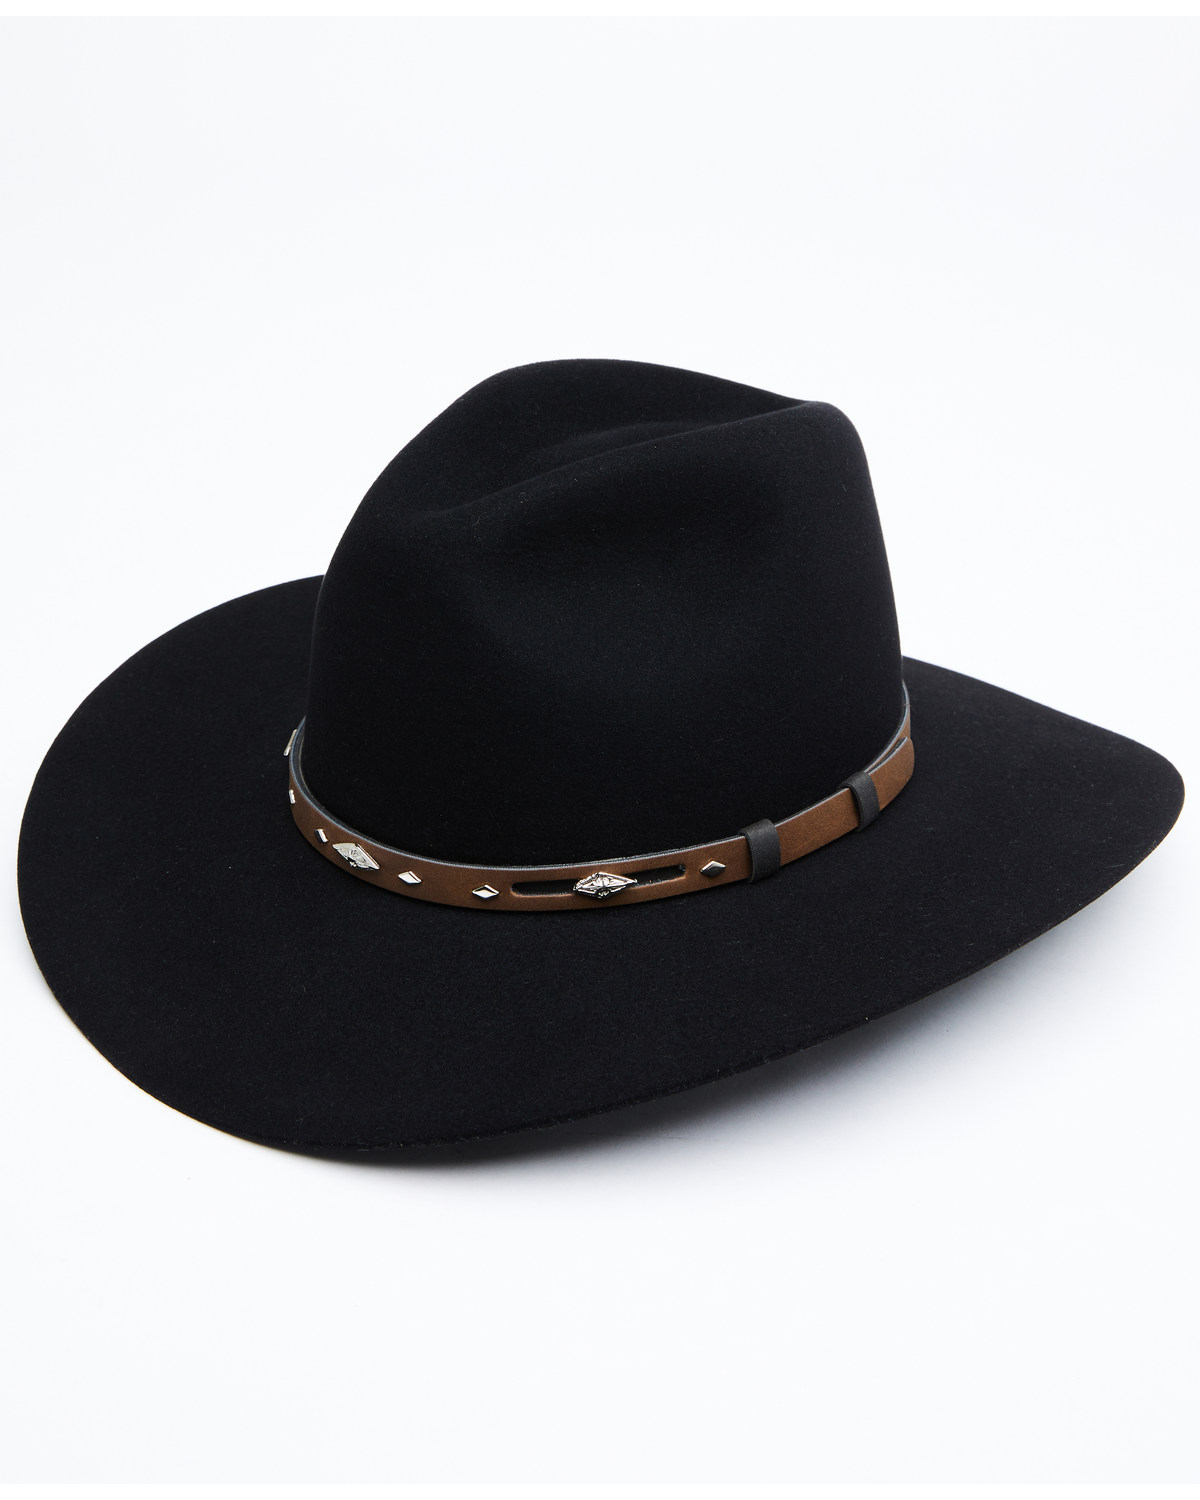 Rodeo King Men's Tracker 5X Felt Western Fashion Hat